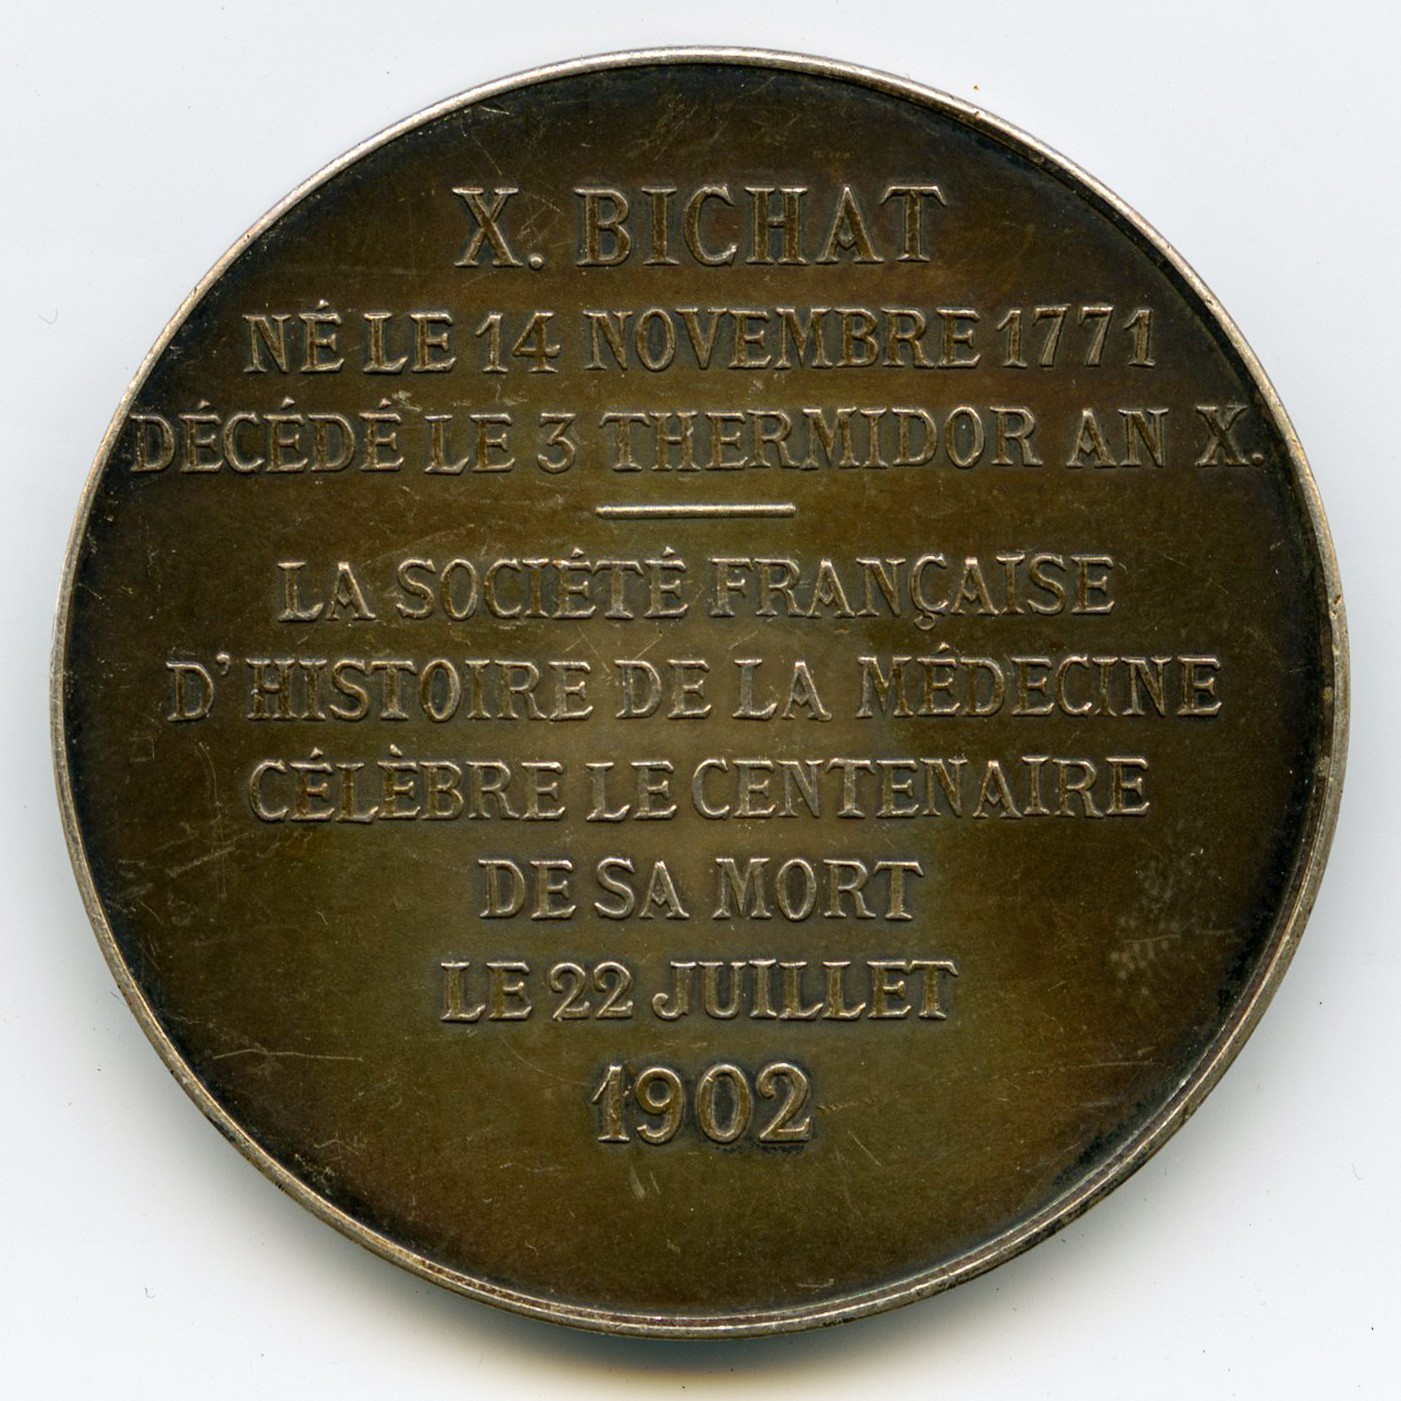 Xavier Bichat - Médaille Argent - 1902 revers